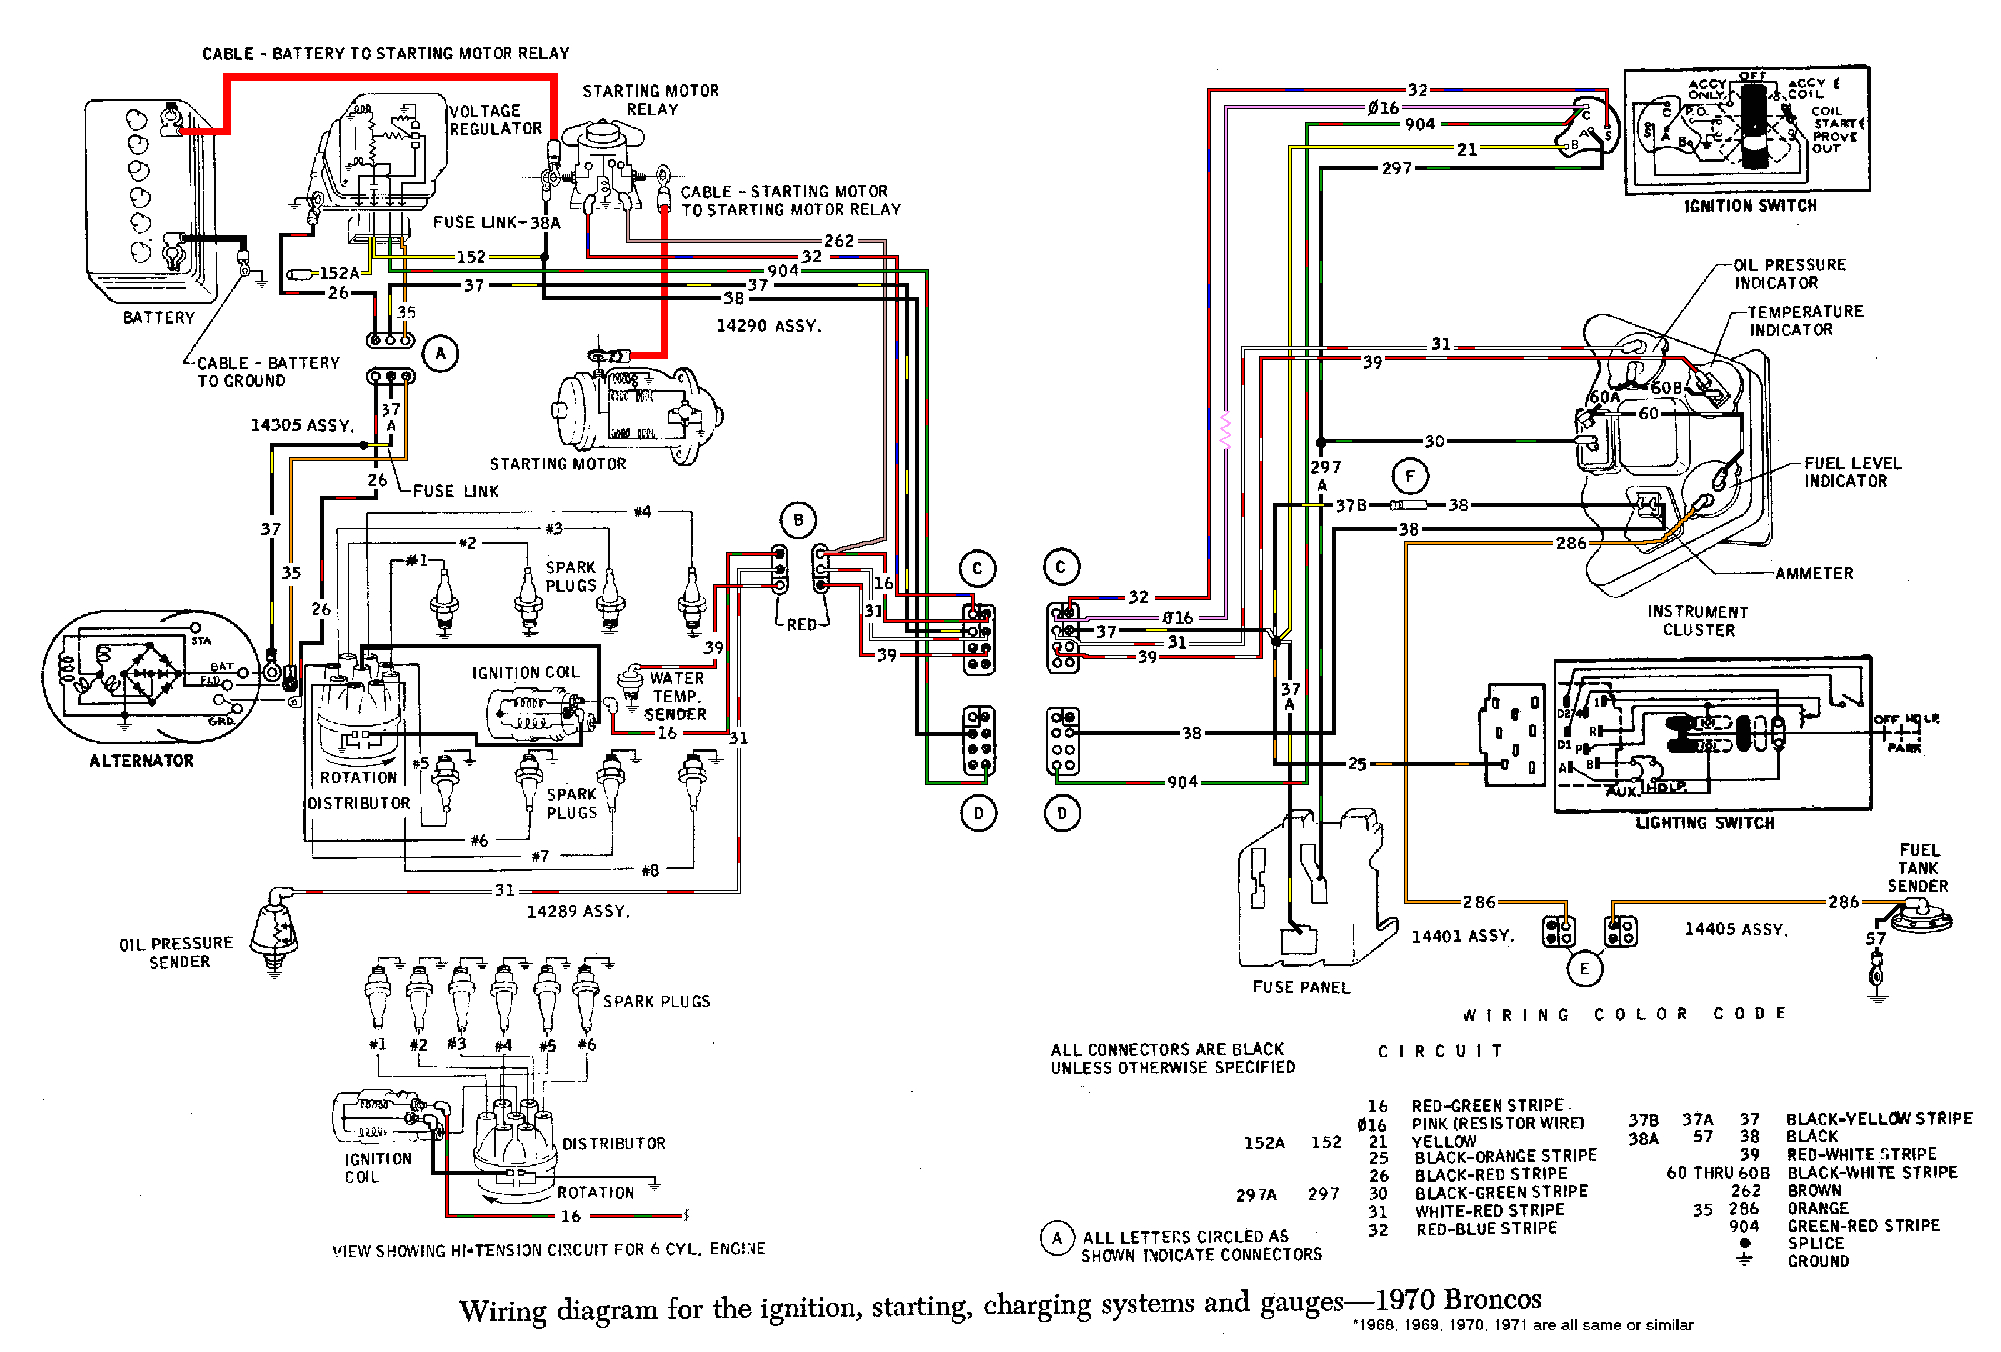 1975 f250 wiring diagram wiring diagram term 1975 f250 wiring diagram wiring diagram 1975 ford f250